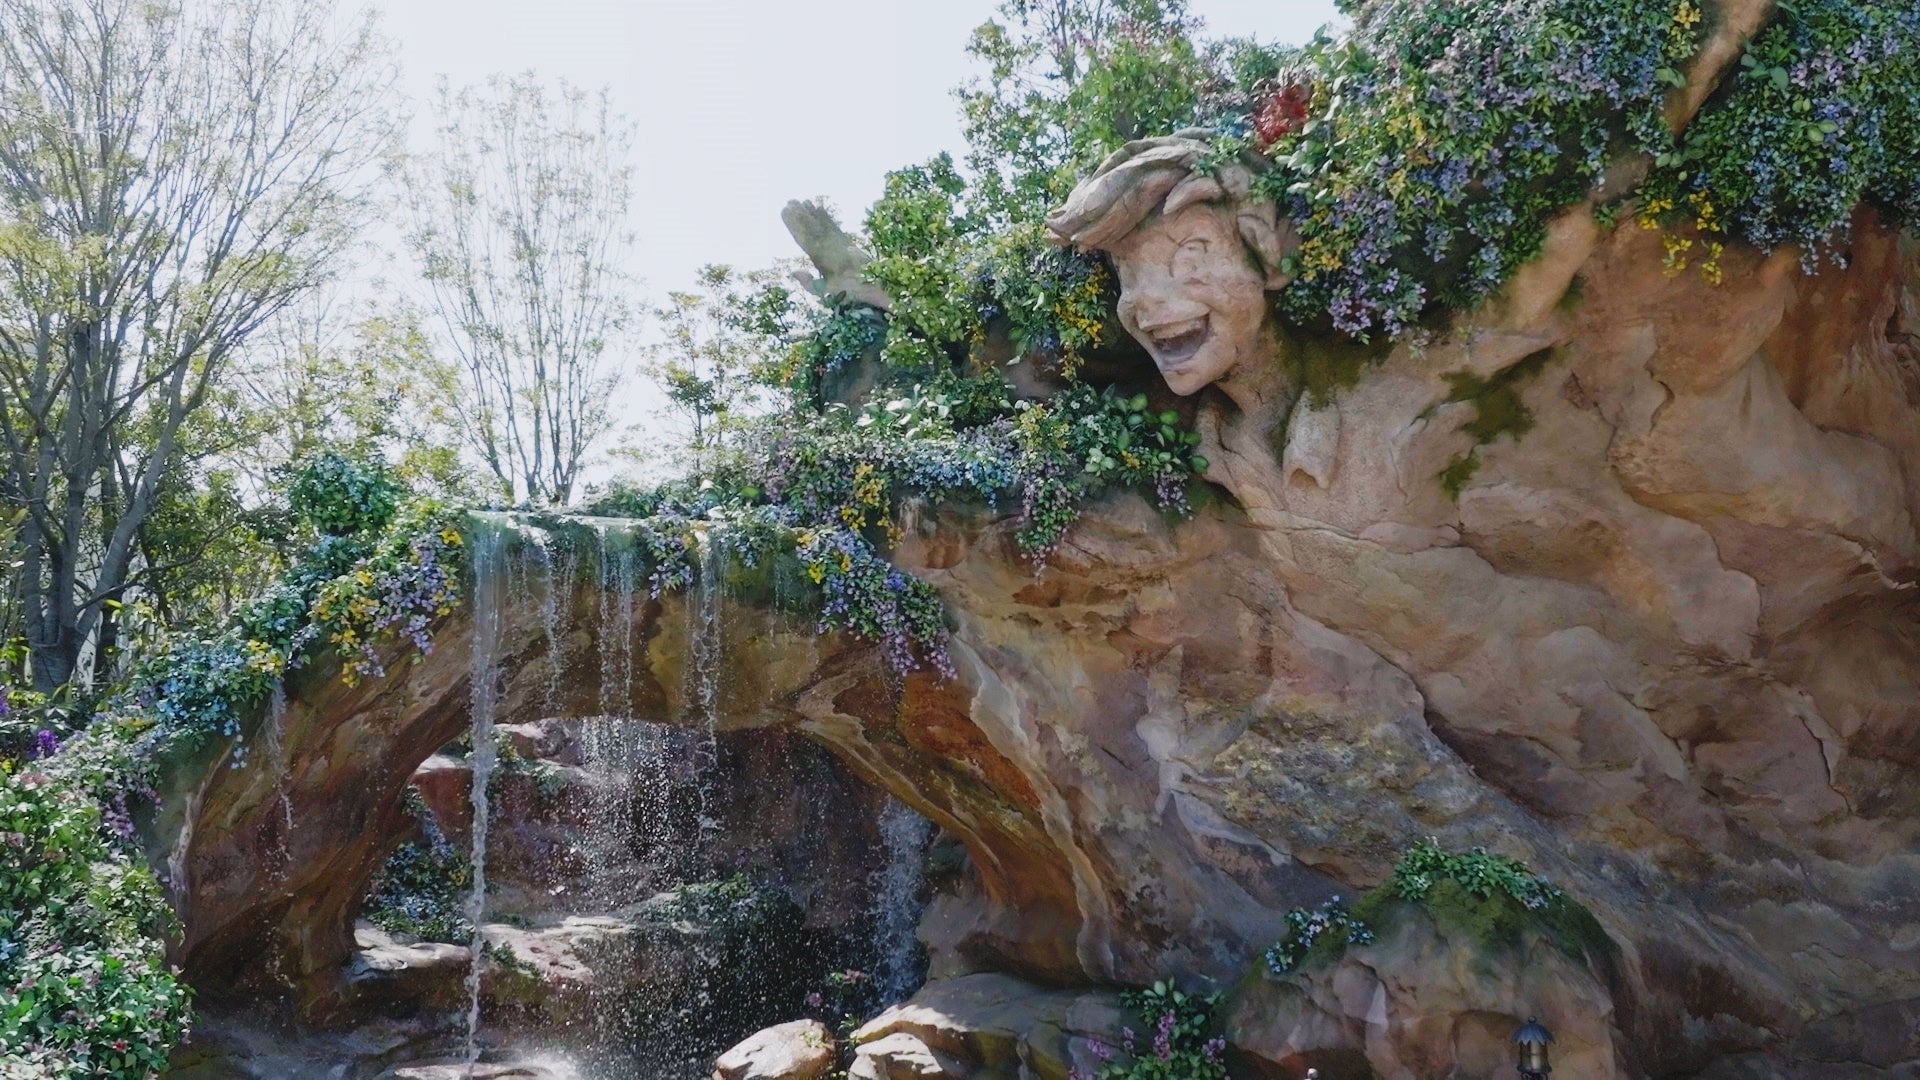 『ピーター・パン』の世界観を表現した魔法の泉